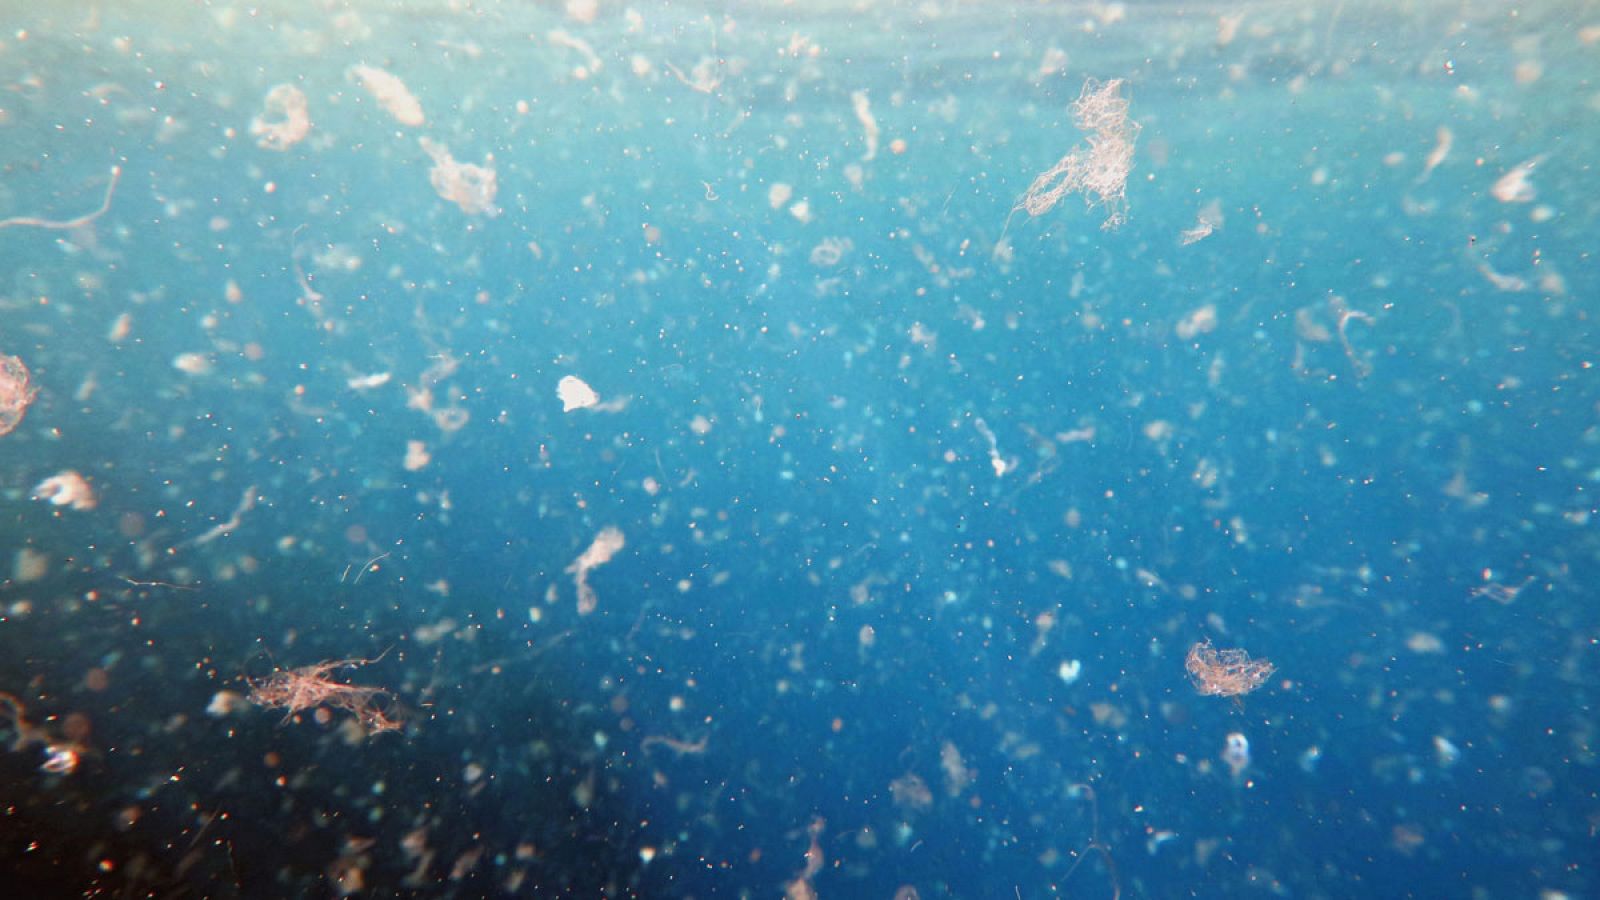 Unos 752 millones de partículas de plástico flotan en el Canal de Menorca. Al peso suponen 3,7 toneladas de pequeñas partículas de plástico.